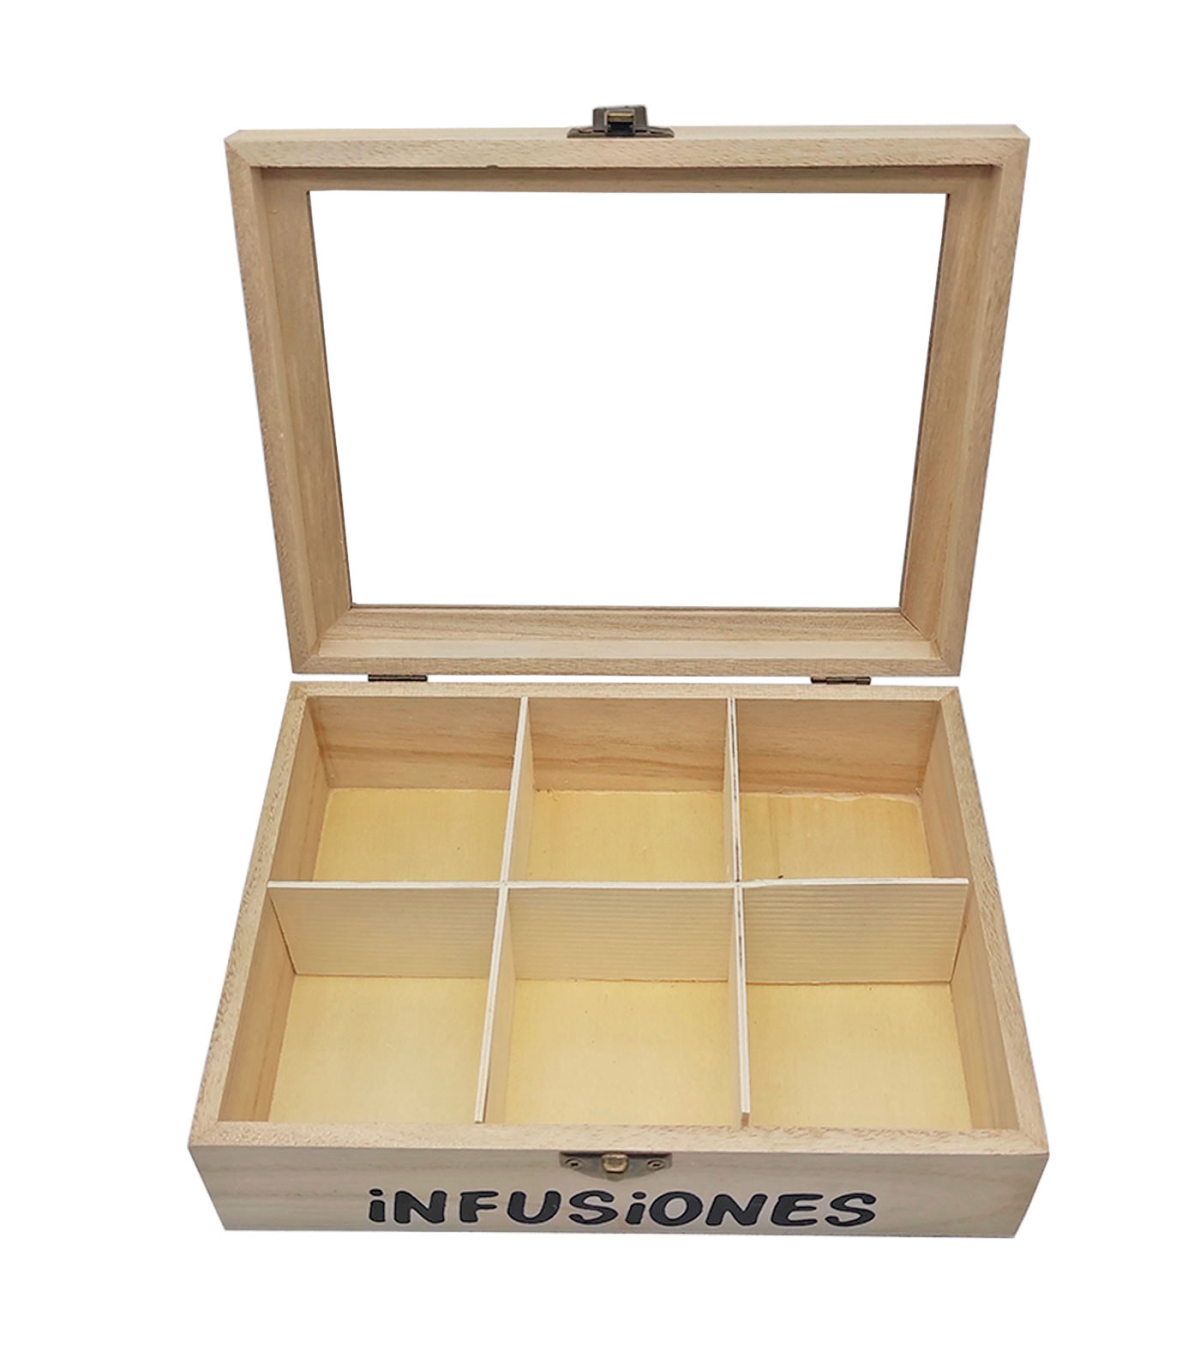 Caja de madera Infusiones con 6 compartimentos y tapa de cristal 6,5 x  20,5 x 15,5 cm. Caja de almacenamiento para guardar inf